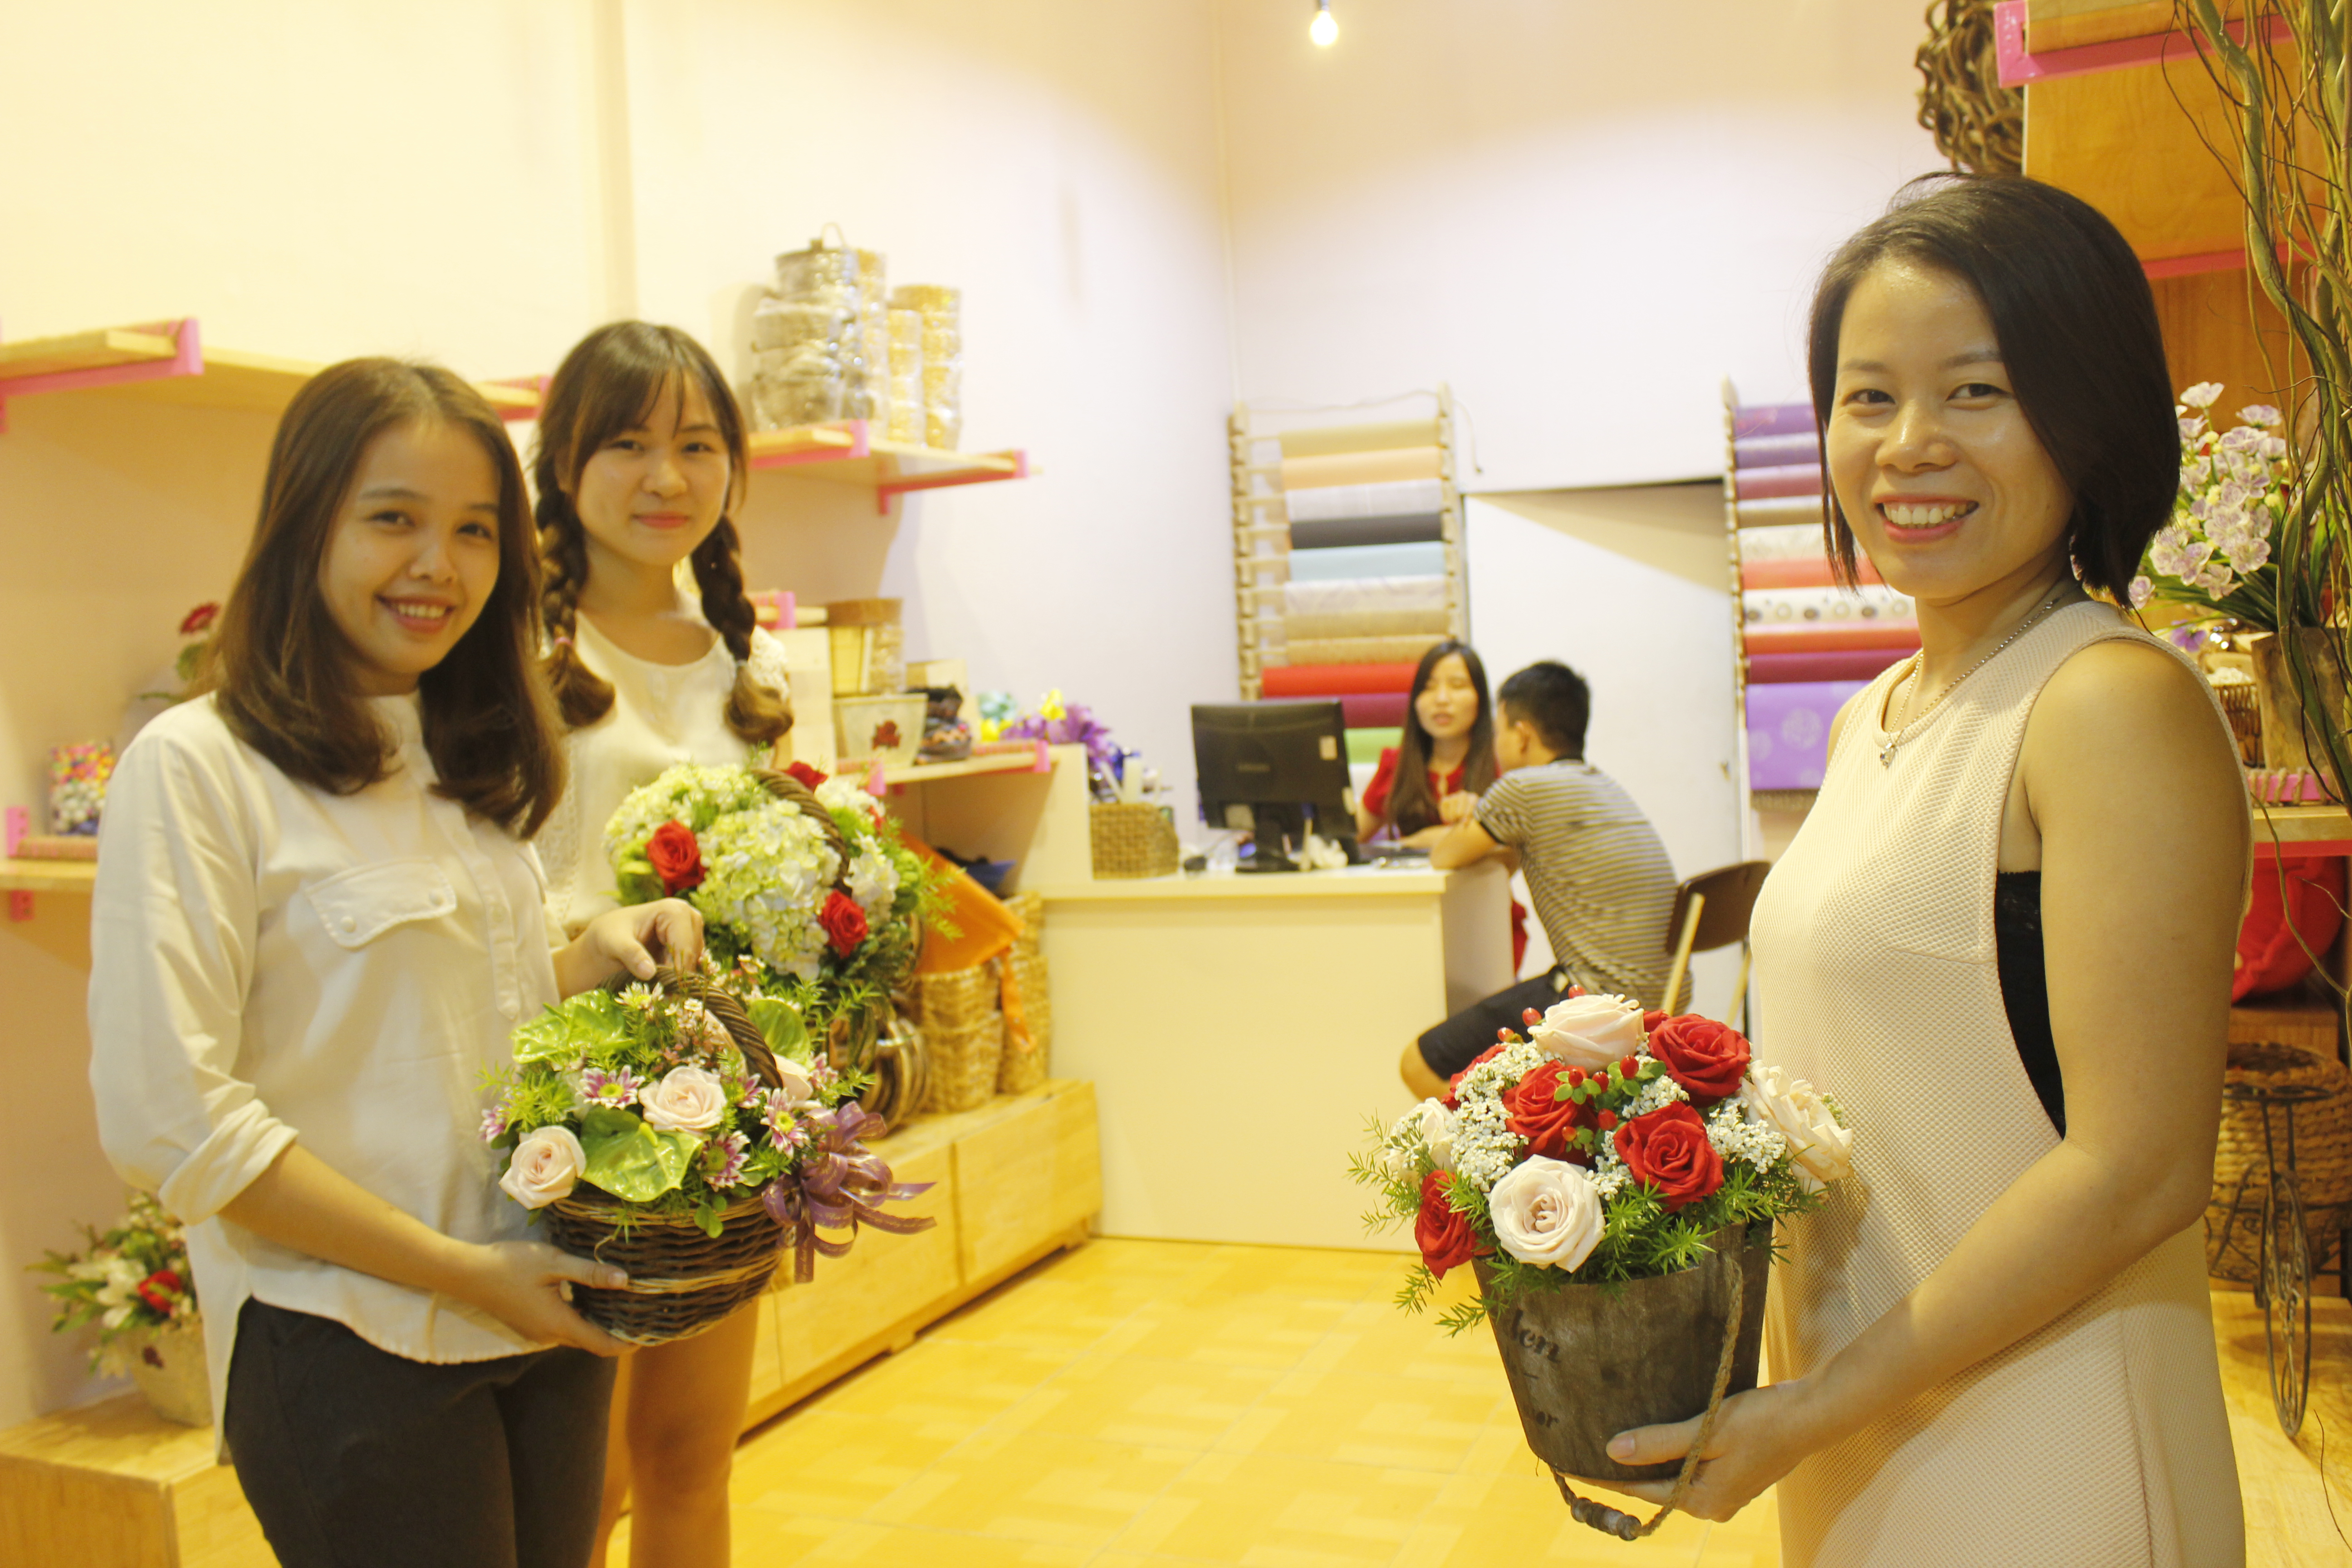 Đến với Hoa Sài Gòn bạn sẽ được sản phẩm hoa chất lượng nhất